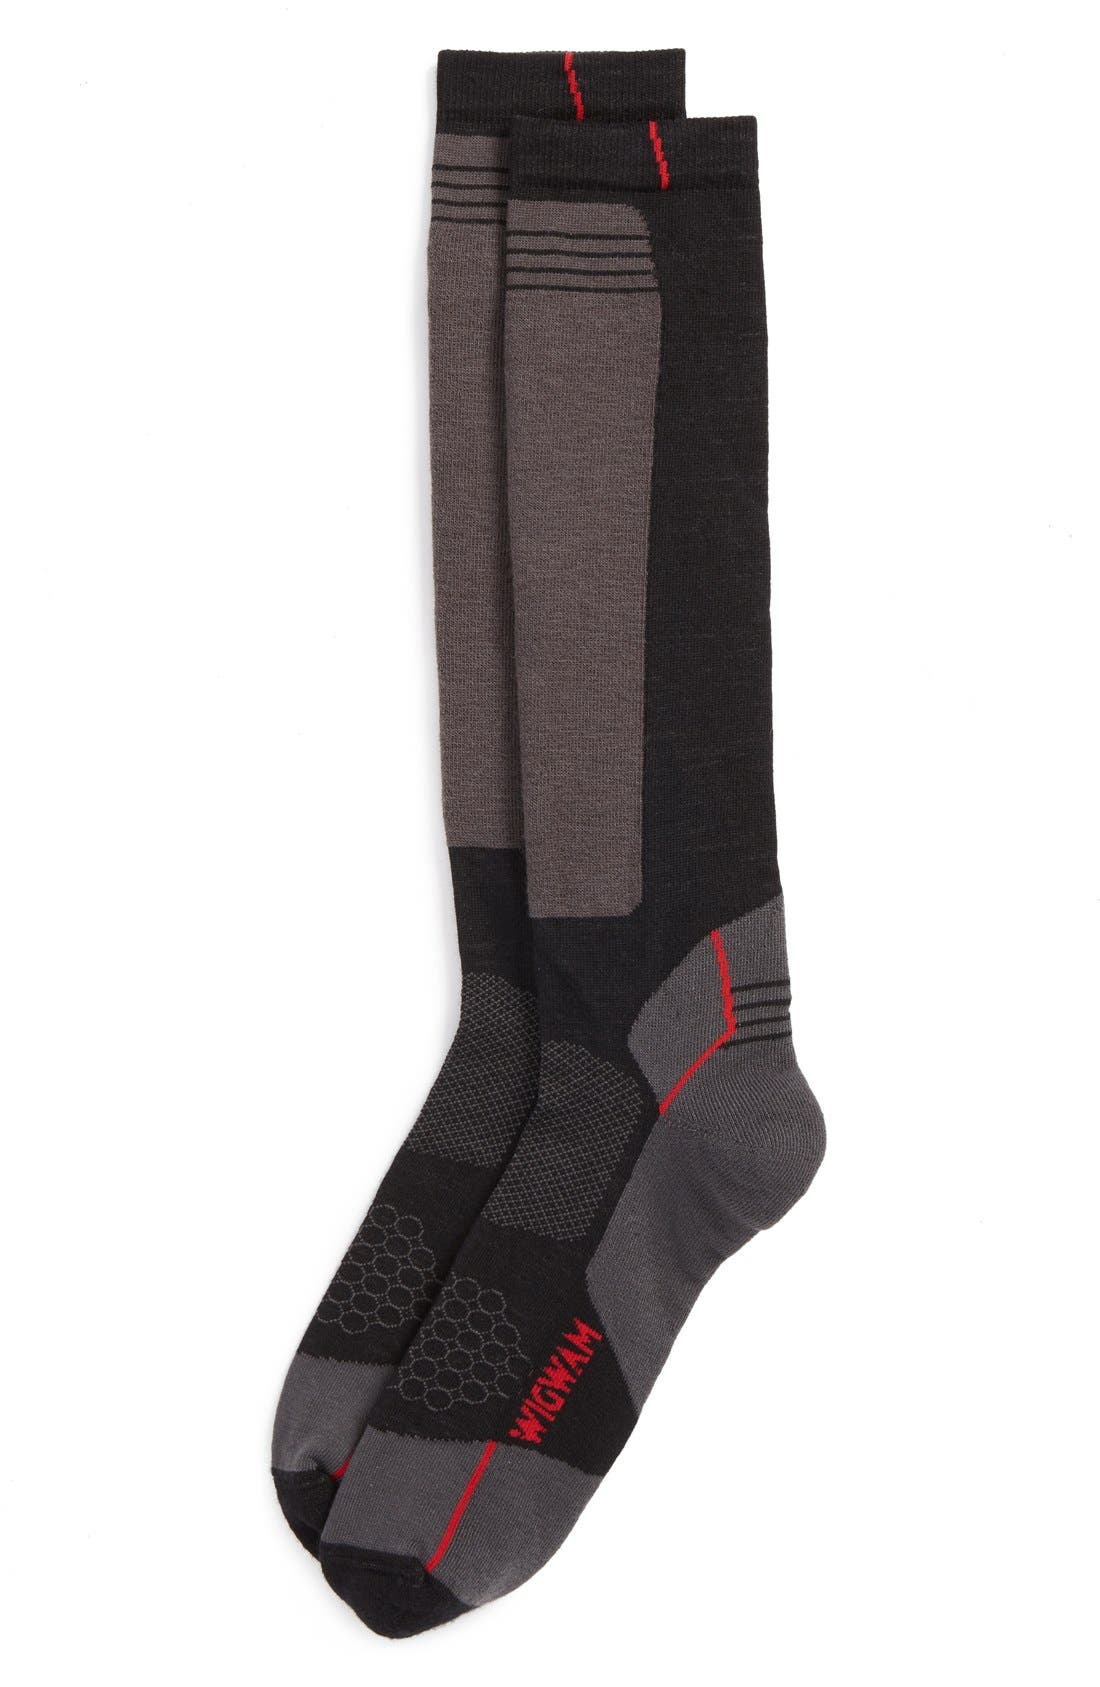 ultimax socks